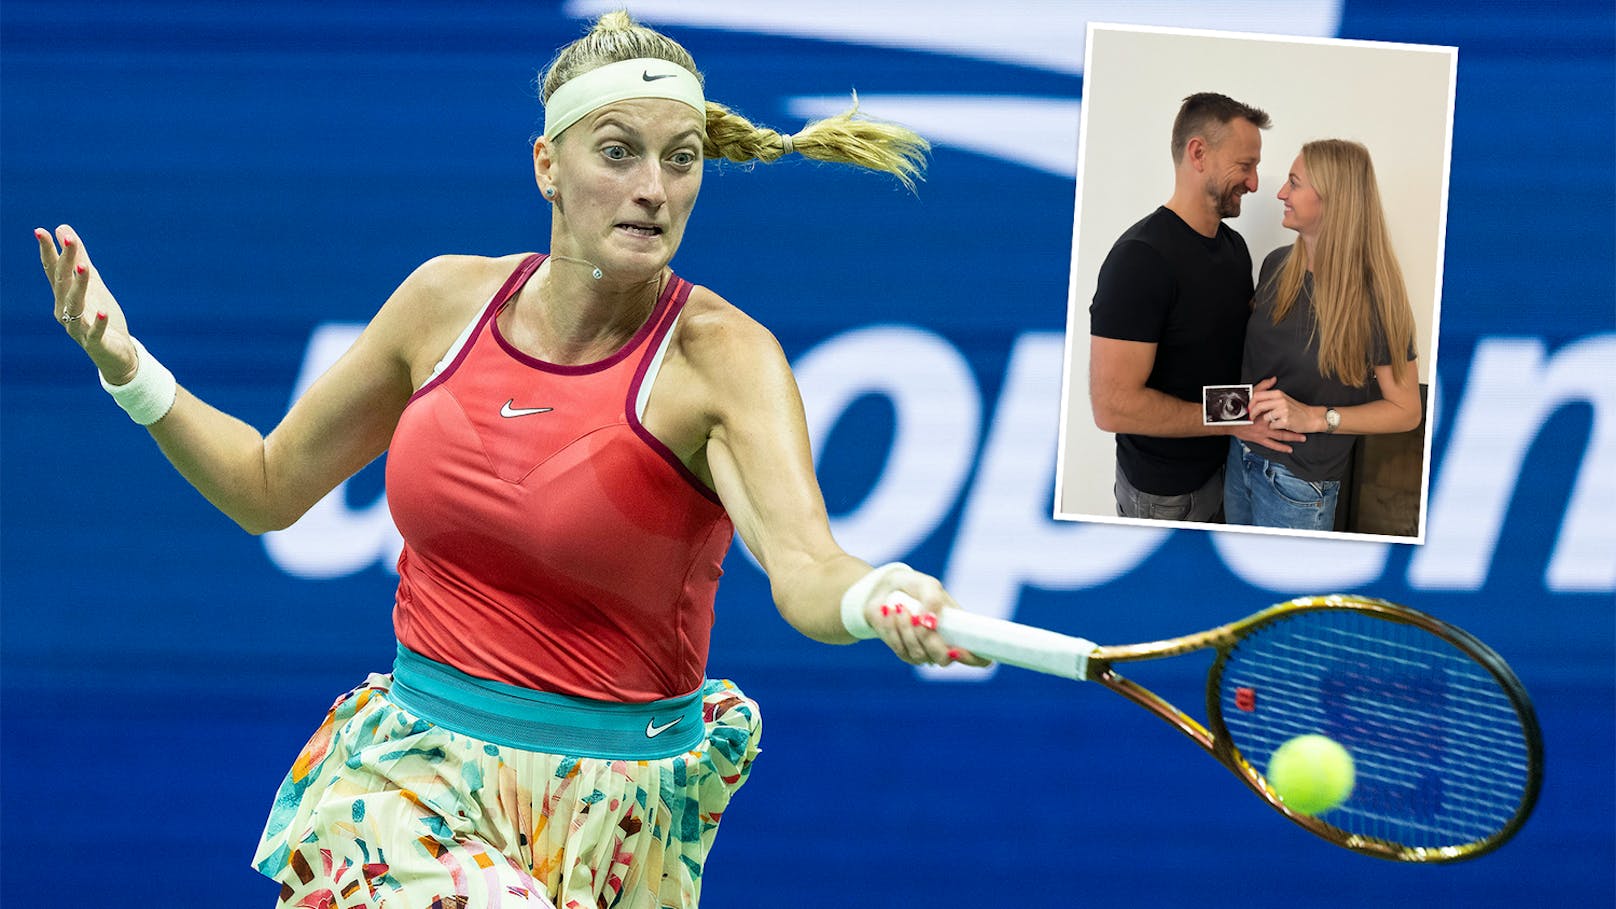 Tennis-Star lässt Australian Open aus: "Neues Kapitel"